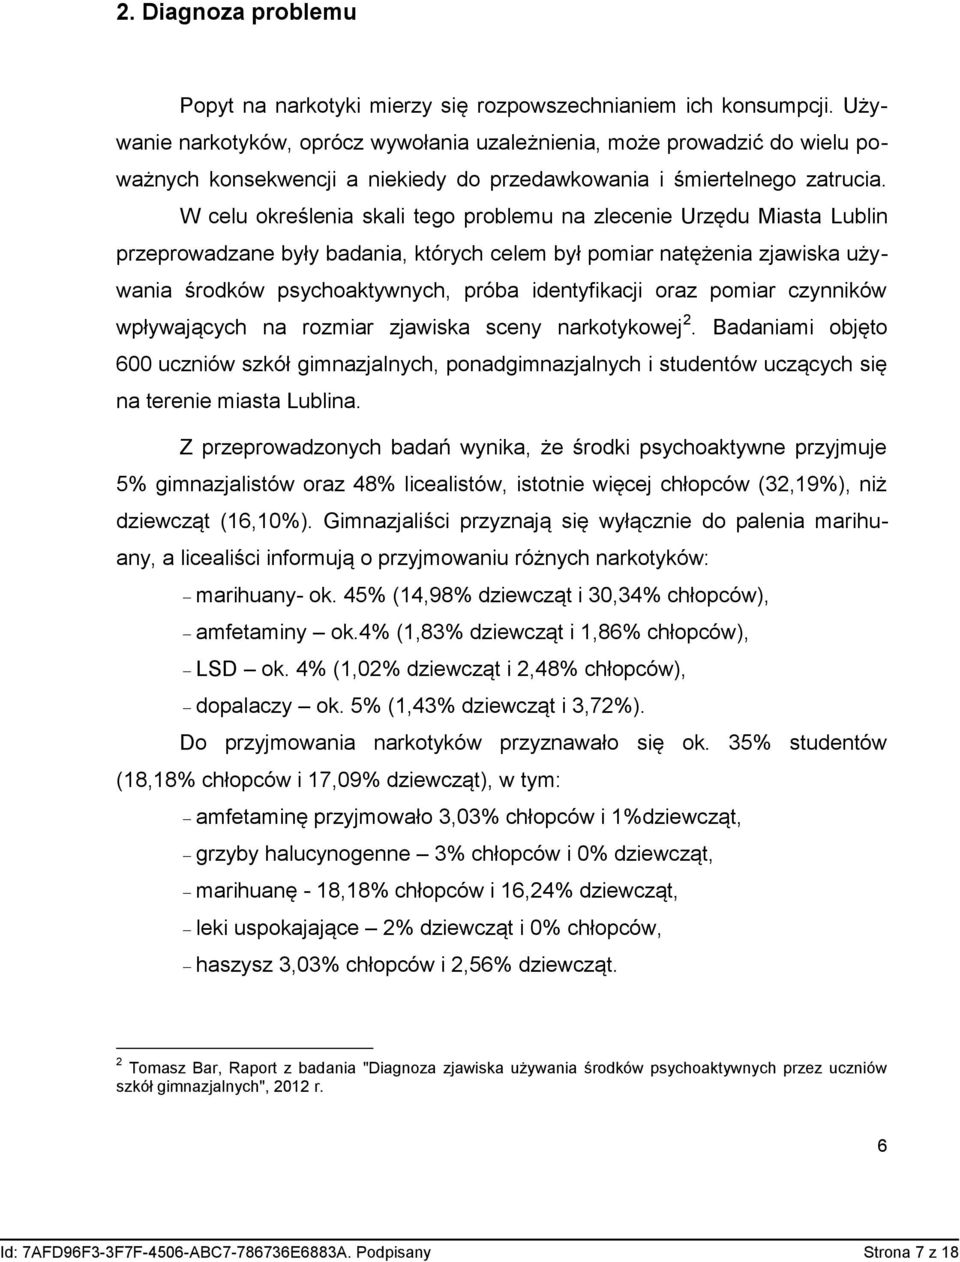 W celu określenia skali tego problemu na zlecenie Urzędu Miasta Lublin przeprowadzane były badania, których celem był pomiar natężenia zjawiska używania środków psychoaktywnych, próba identyfikacji